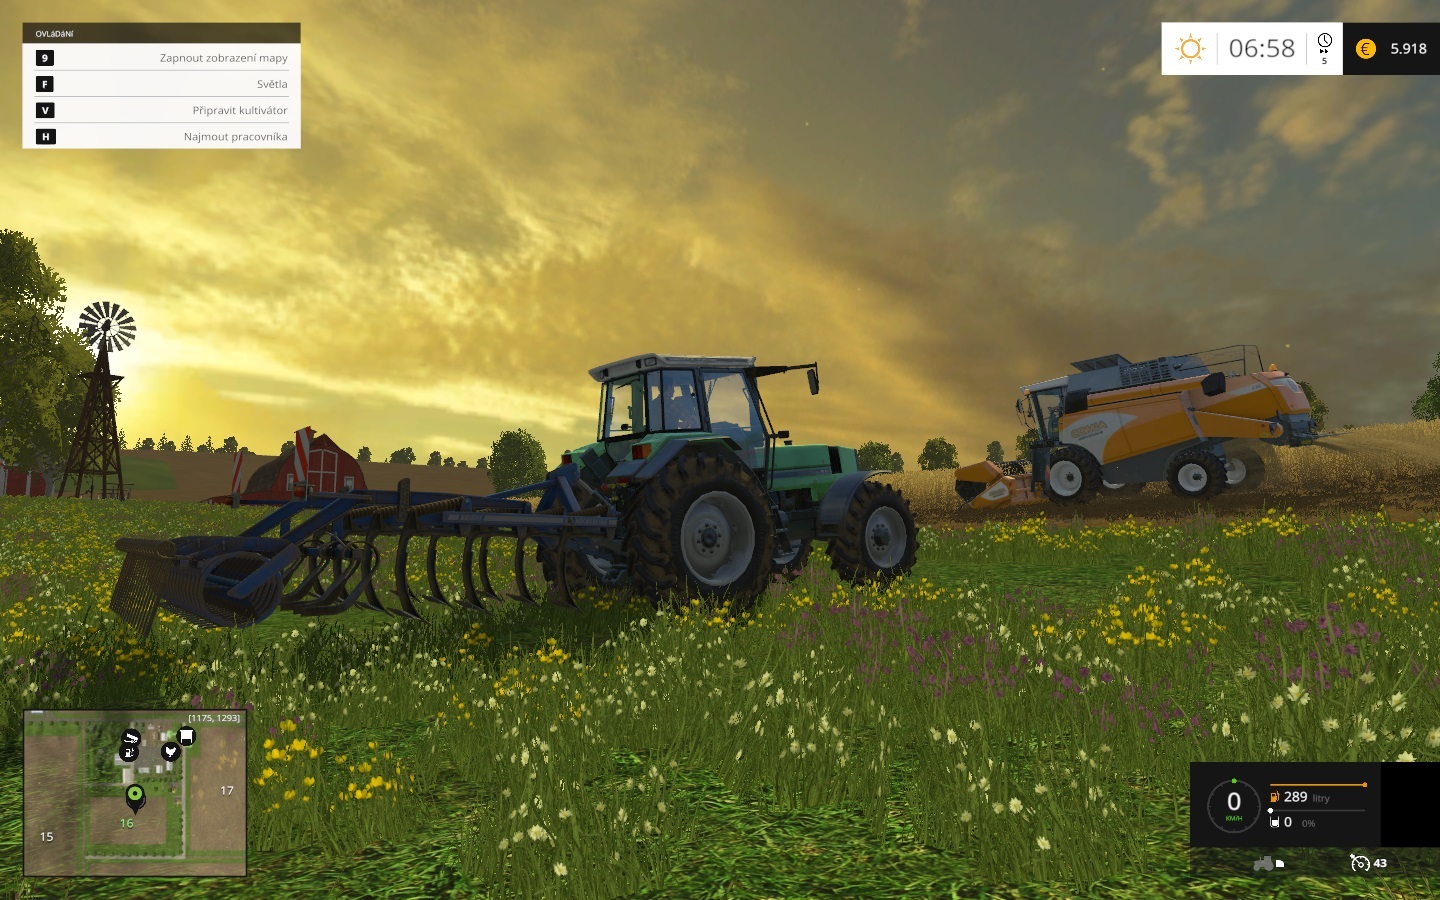 Farming Simulator 15 Romantickch zberov ako vystrihnutch z roenky farmra si uijete dostatok, len na ne nie je nikdy as.